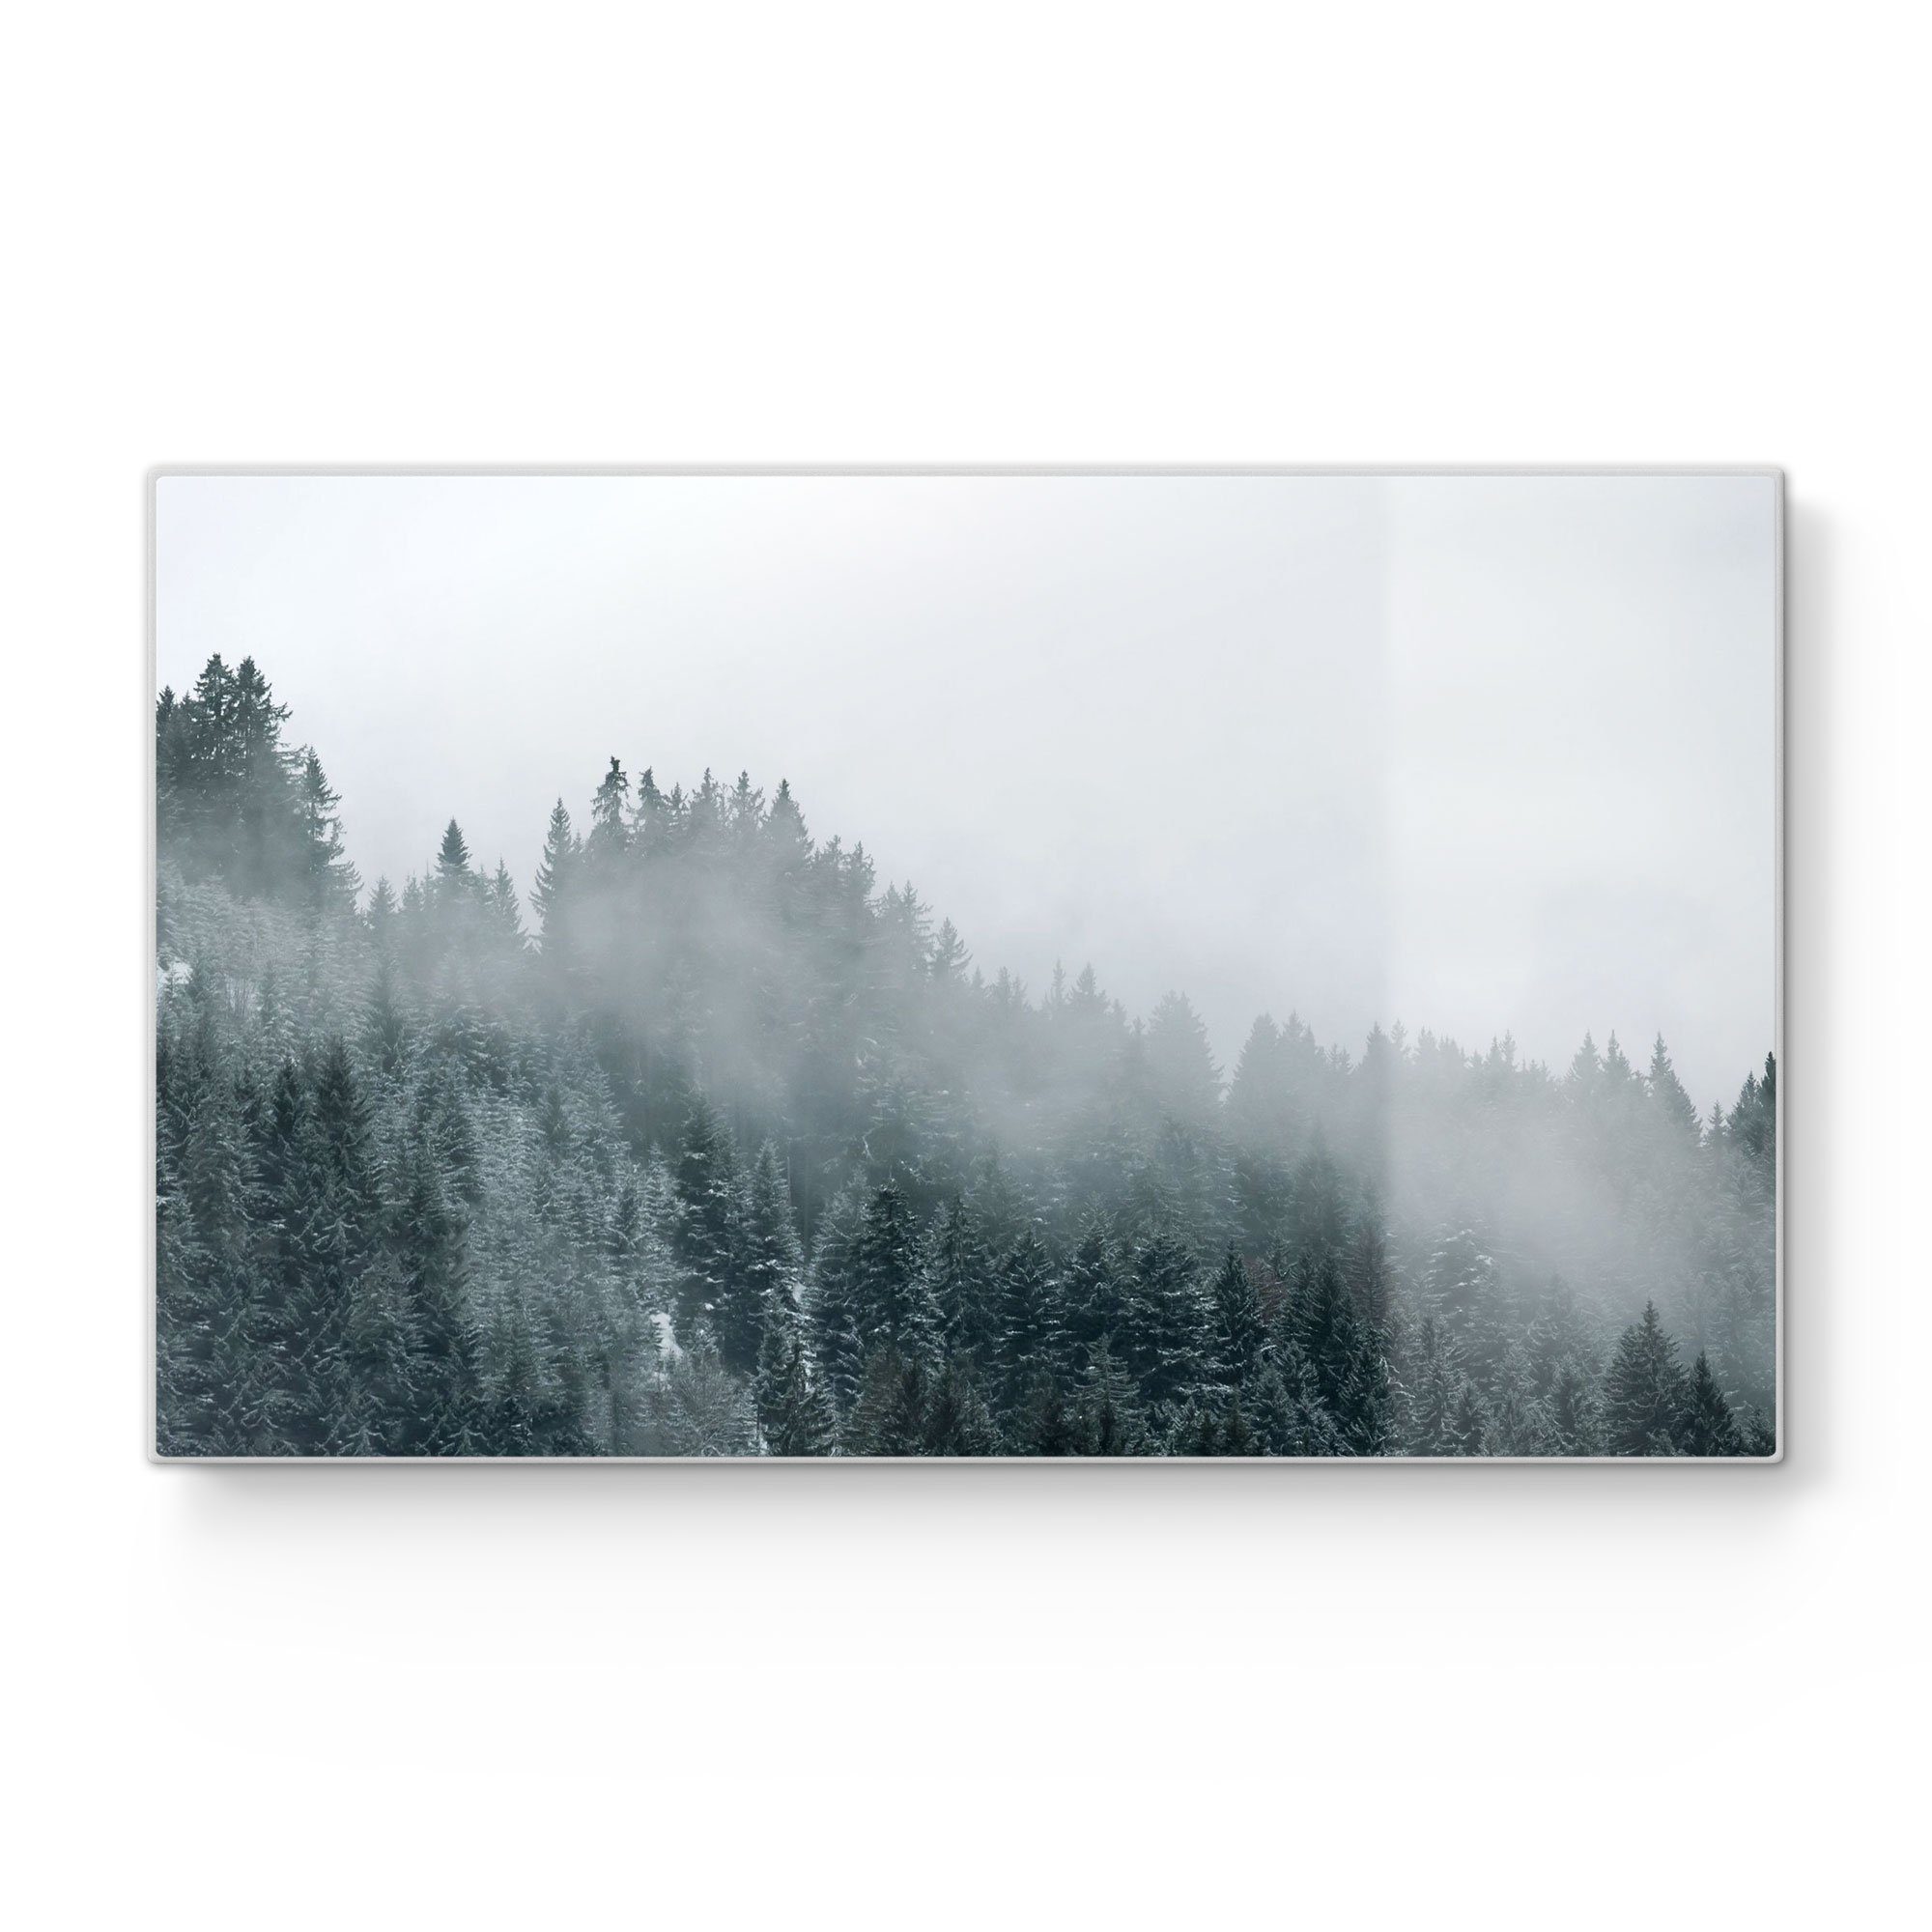 DEQORI Schneidebrett 'Nebel über Baumwipfeln', Glas, Platte Frühstücksbrett Schneideplatte